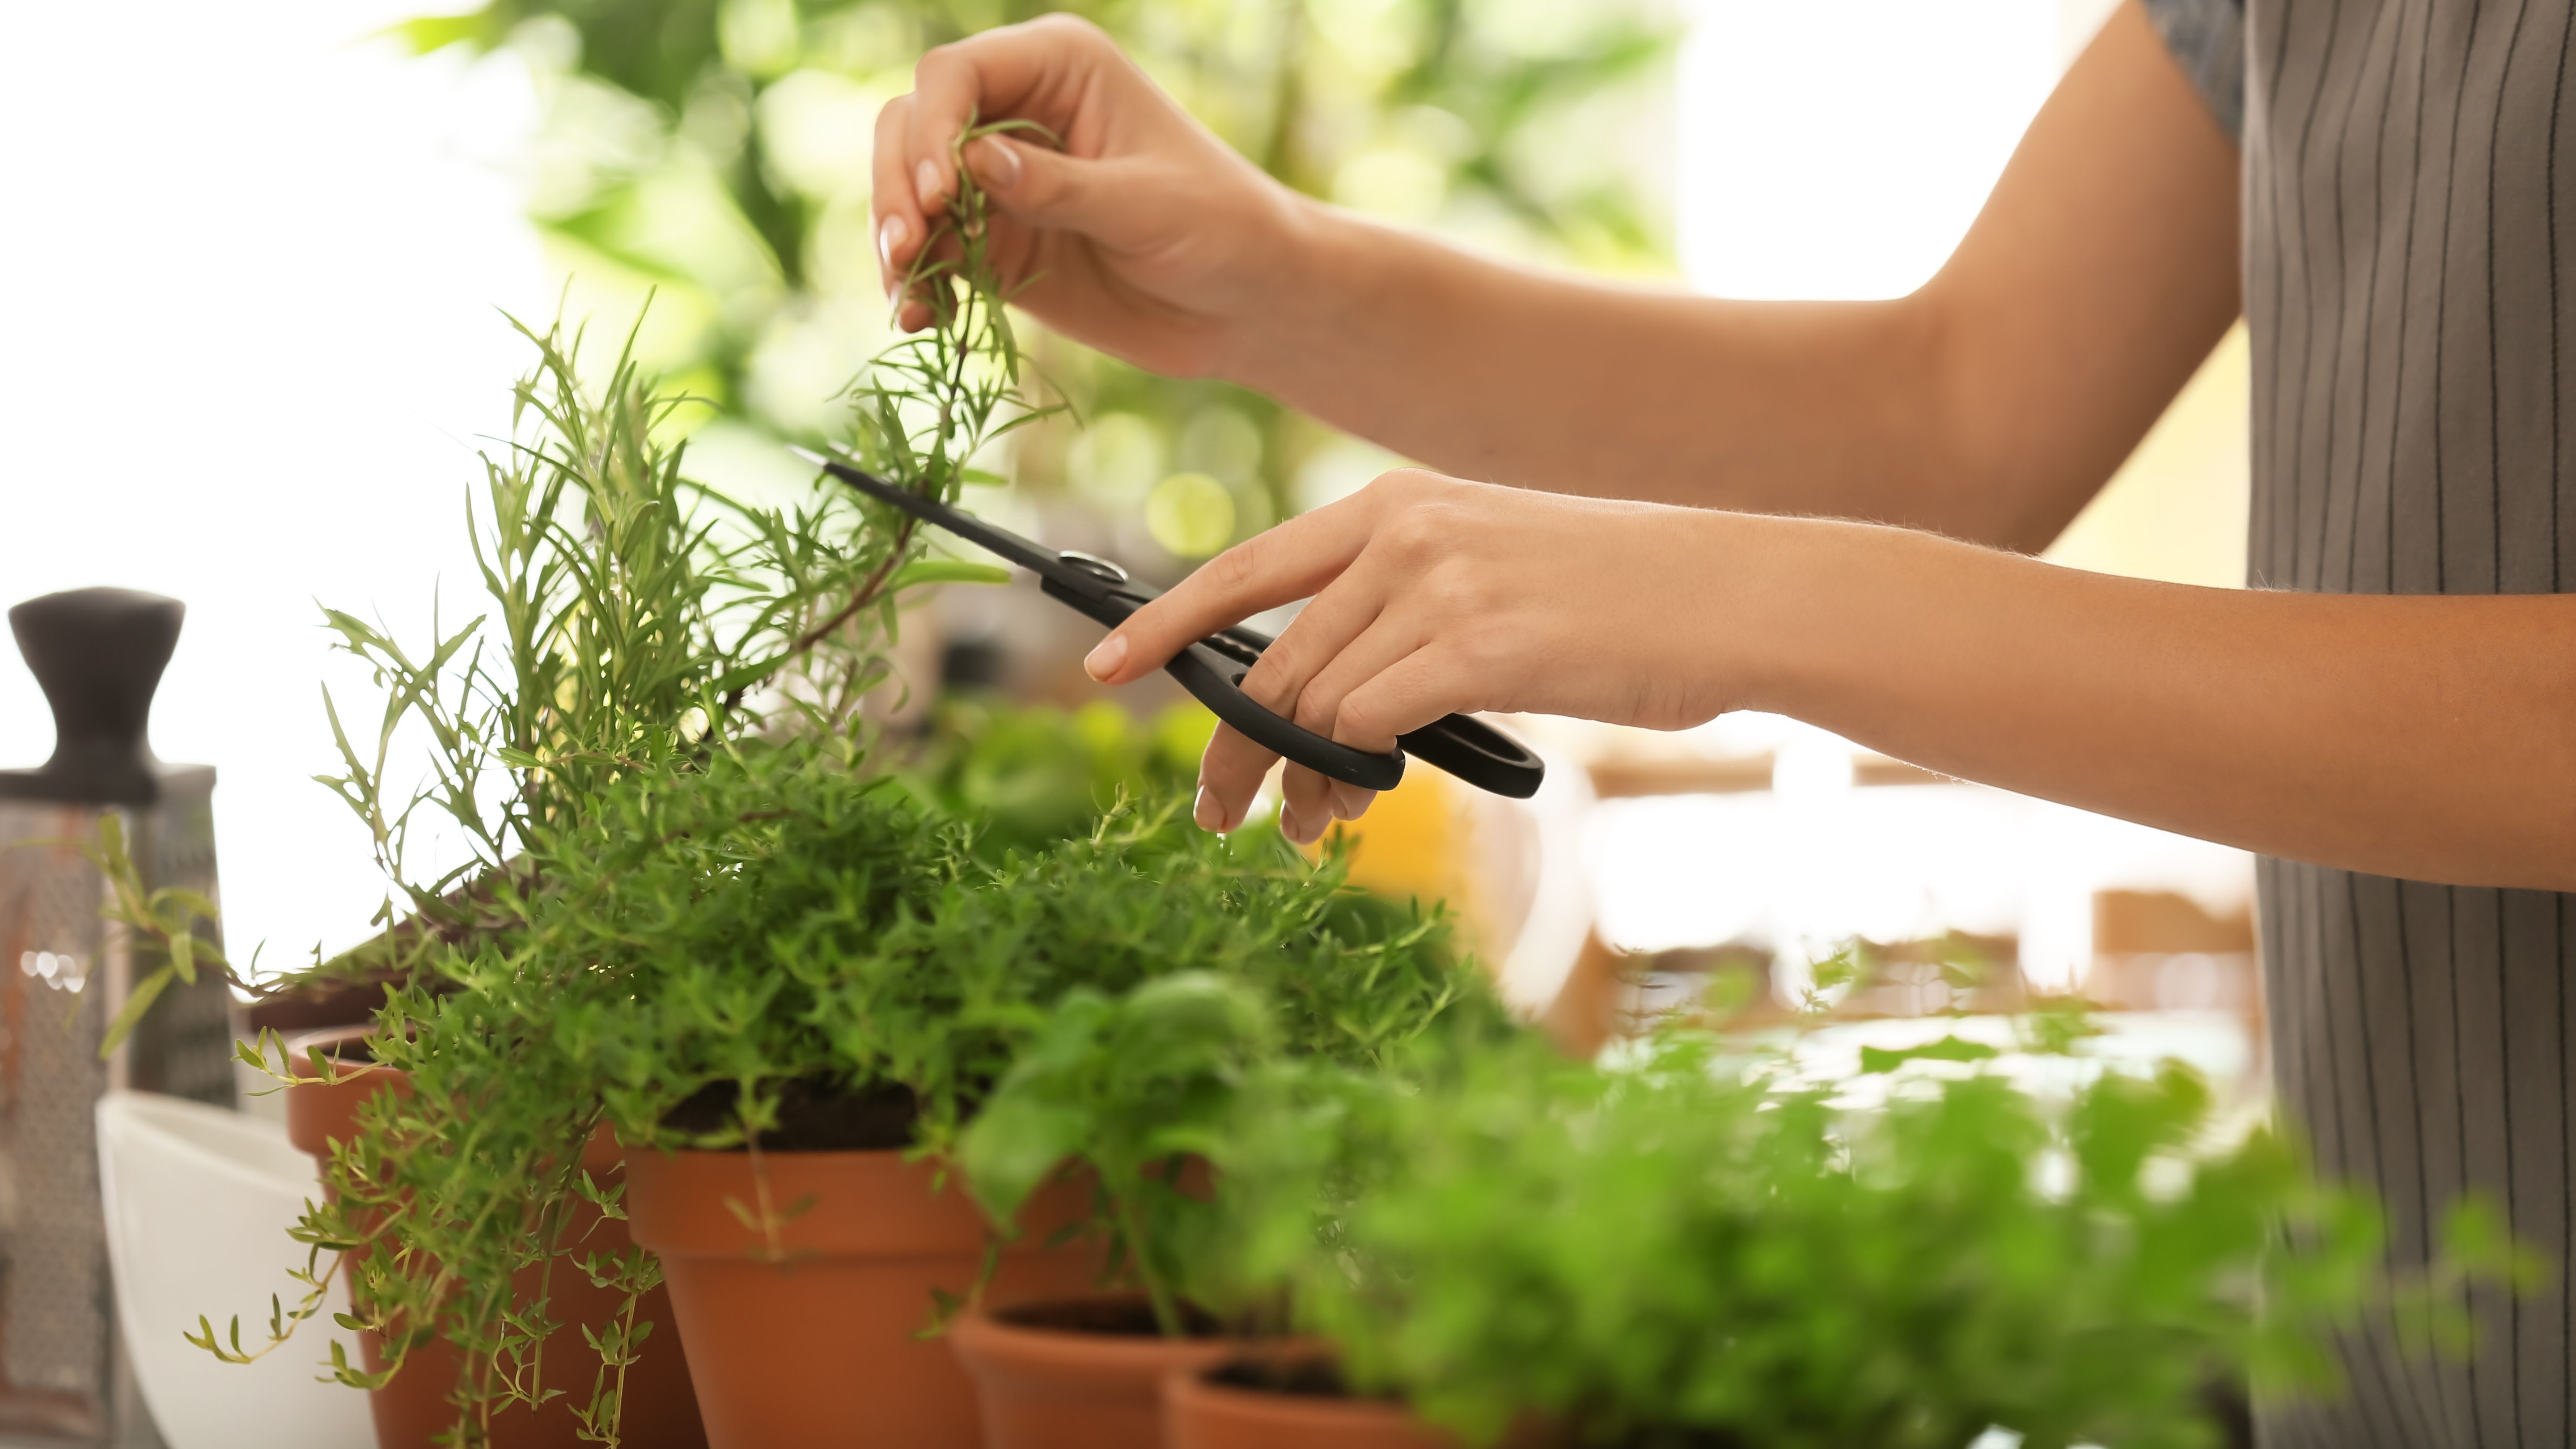 Comment choisir et cuisiner des plantes aromatiques ?